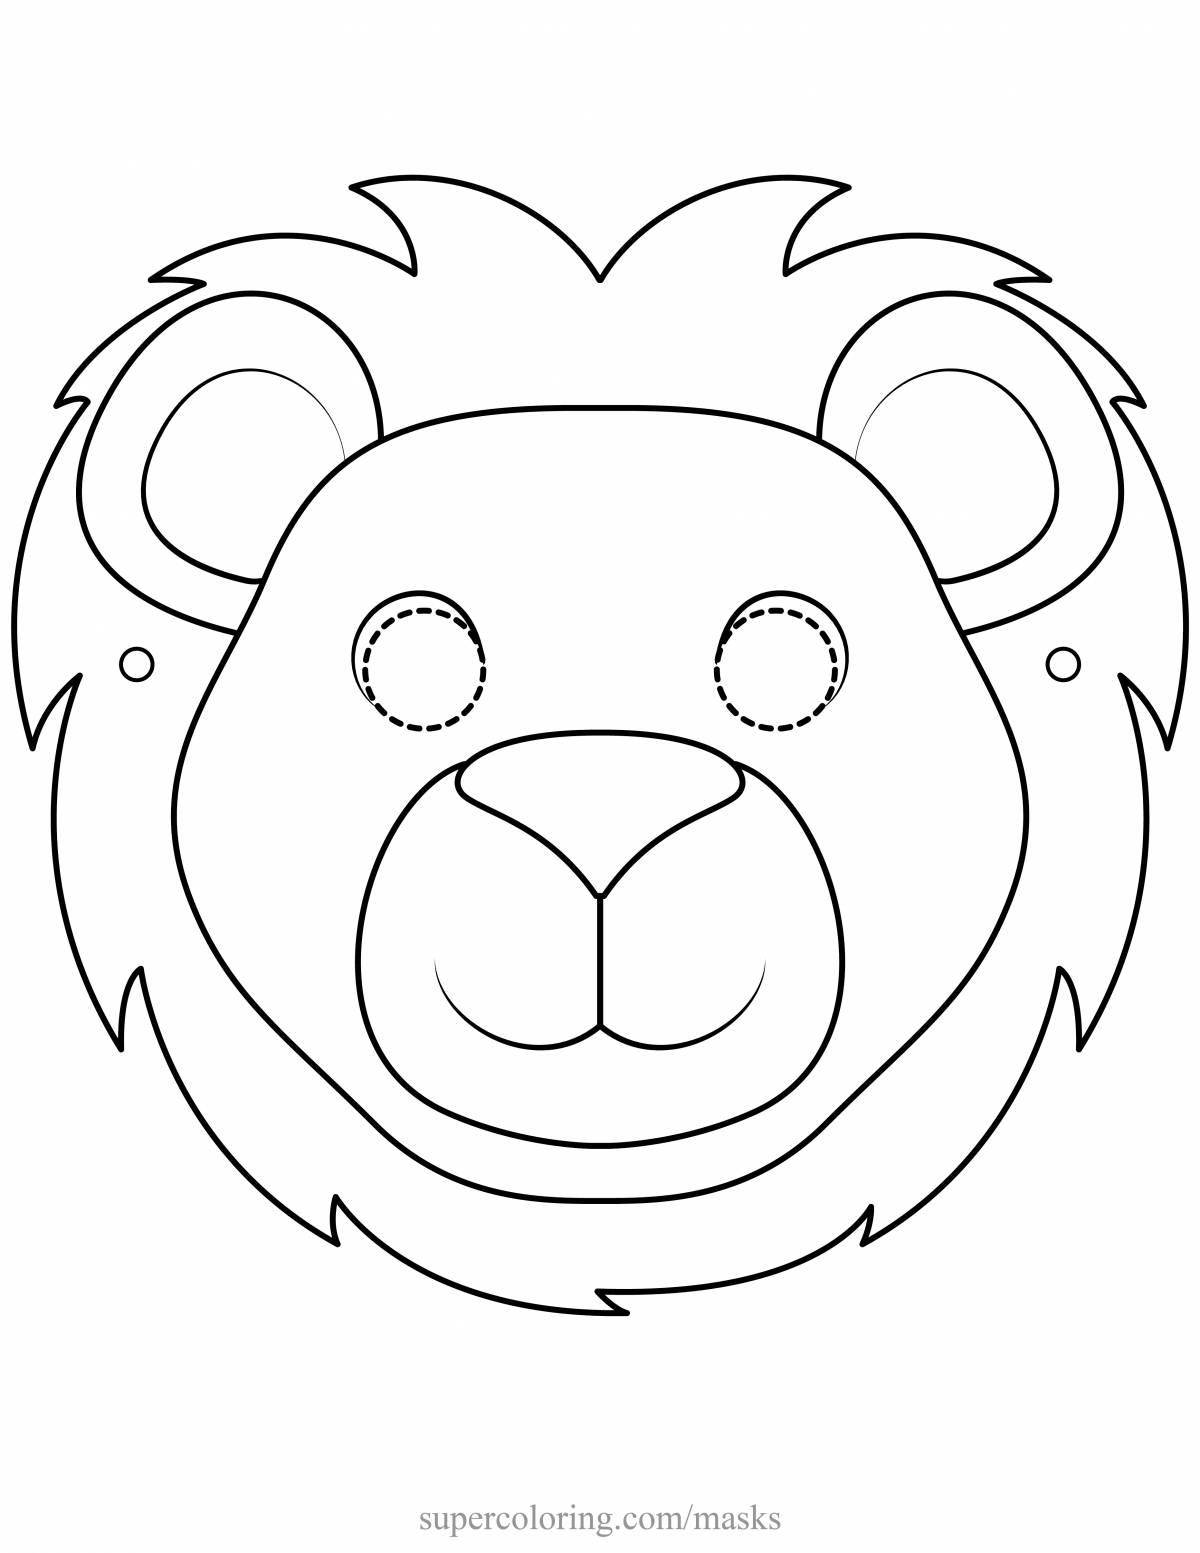 Regal lion muzzle coloring page